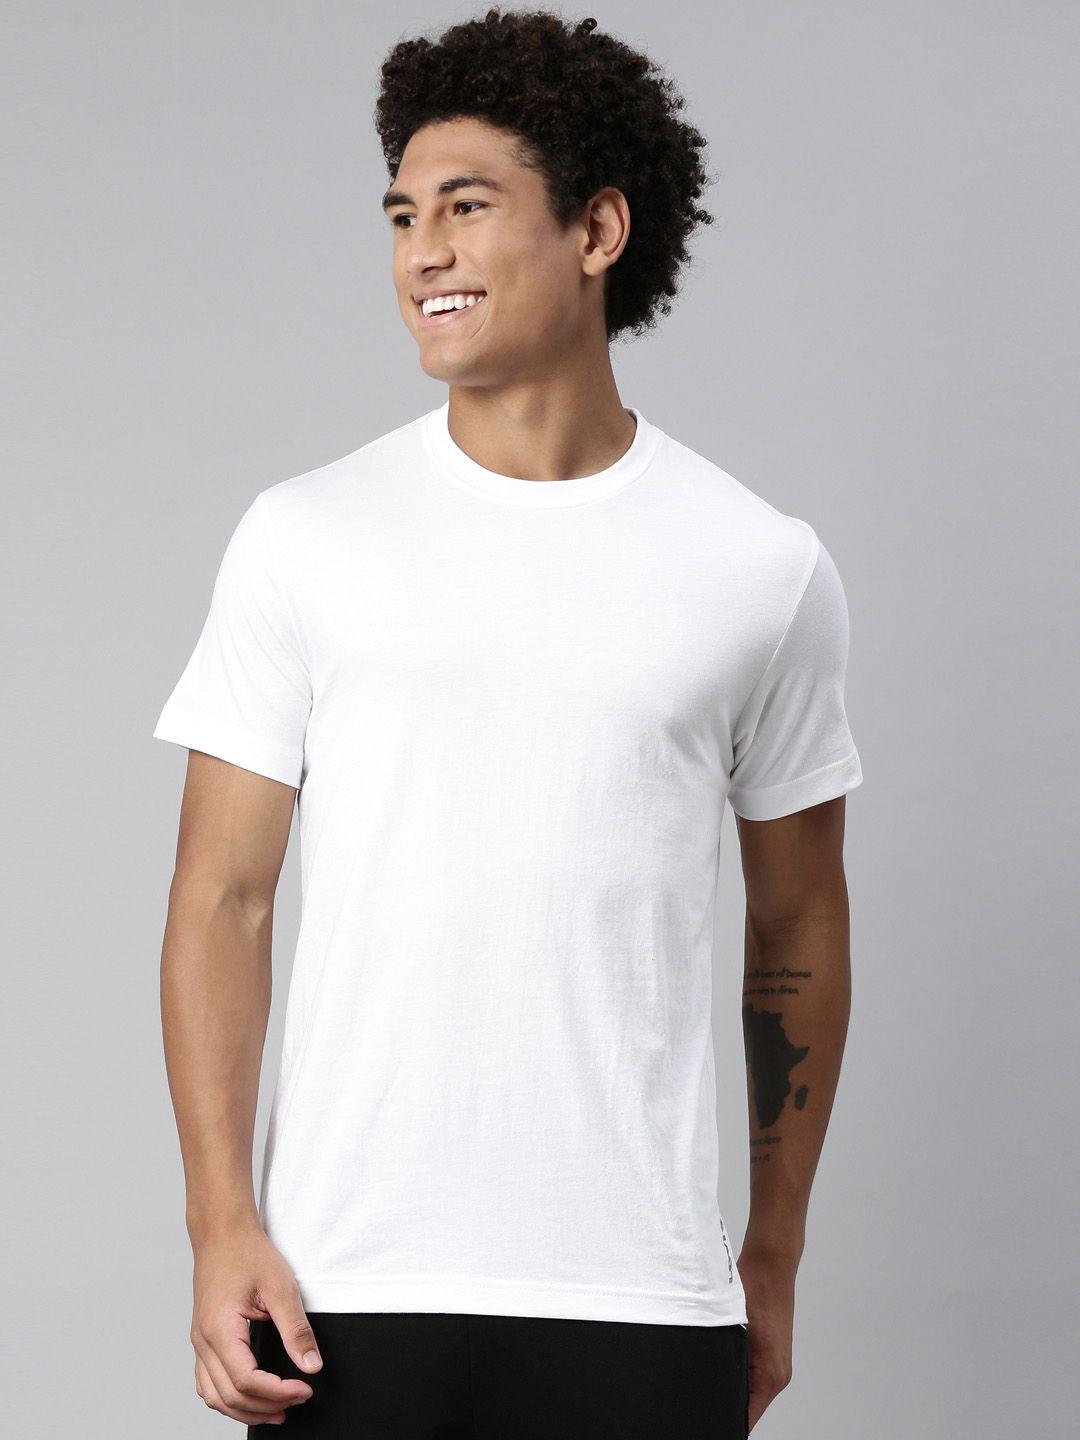 levis-men-smartskin-technology-pure-cotton-lounge-t-shirts-025